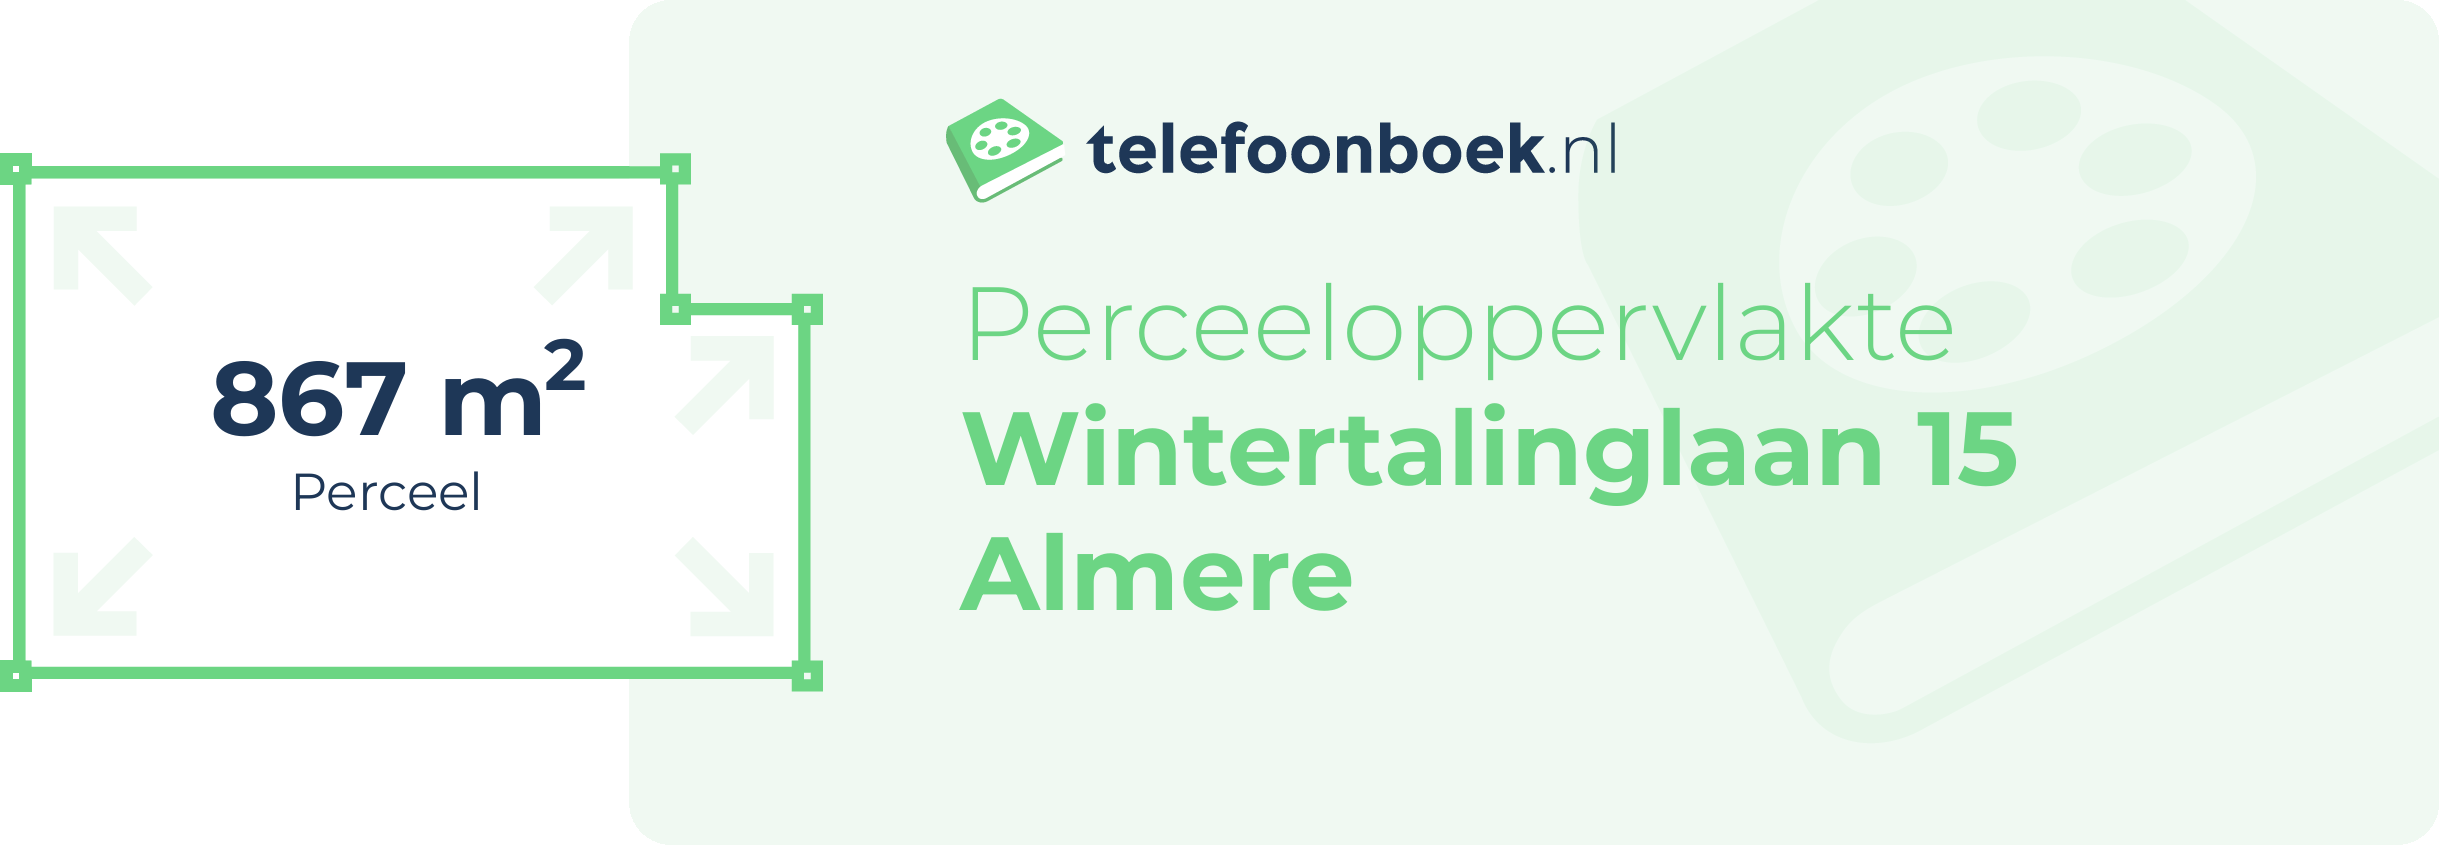 Perceeloppervlakte Wintertalinglaan 15 Almere